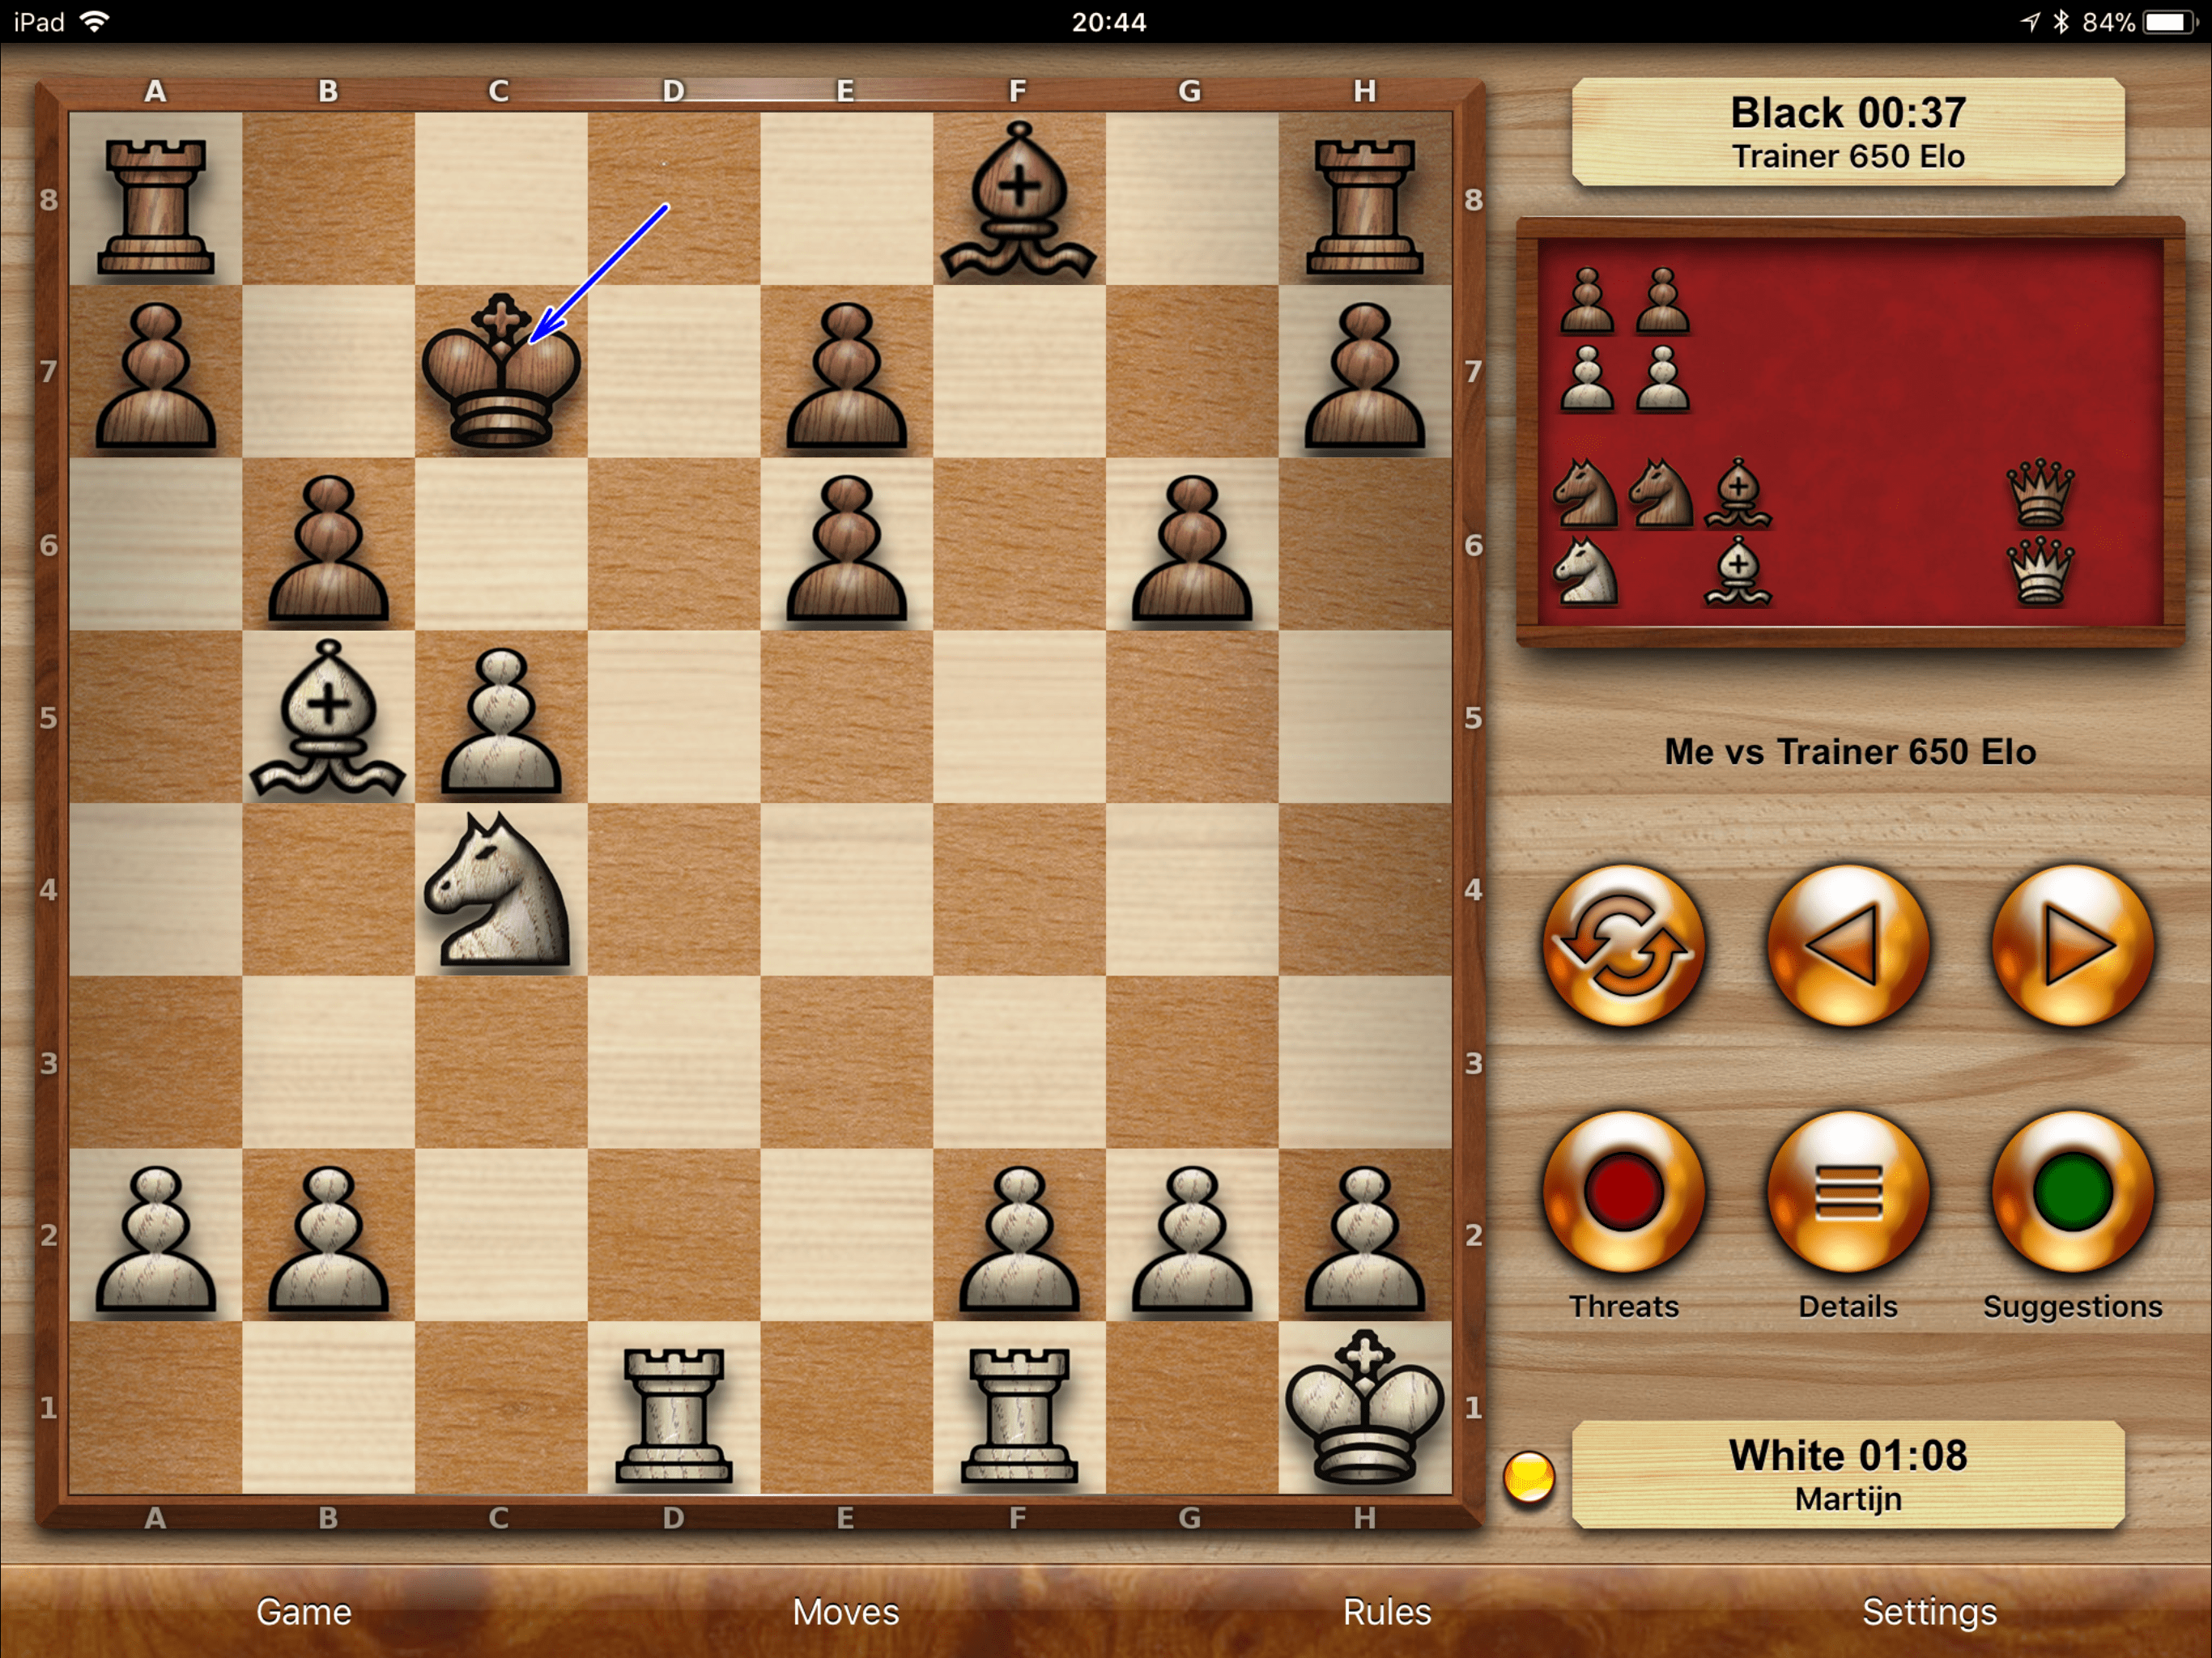 Chess Pro: schaak spelen op de iPad